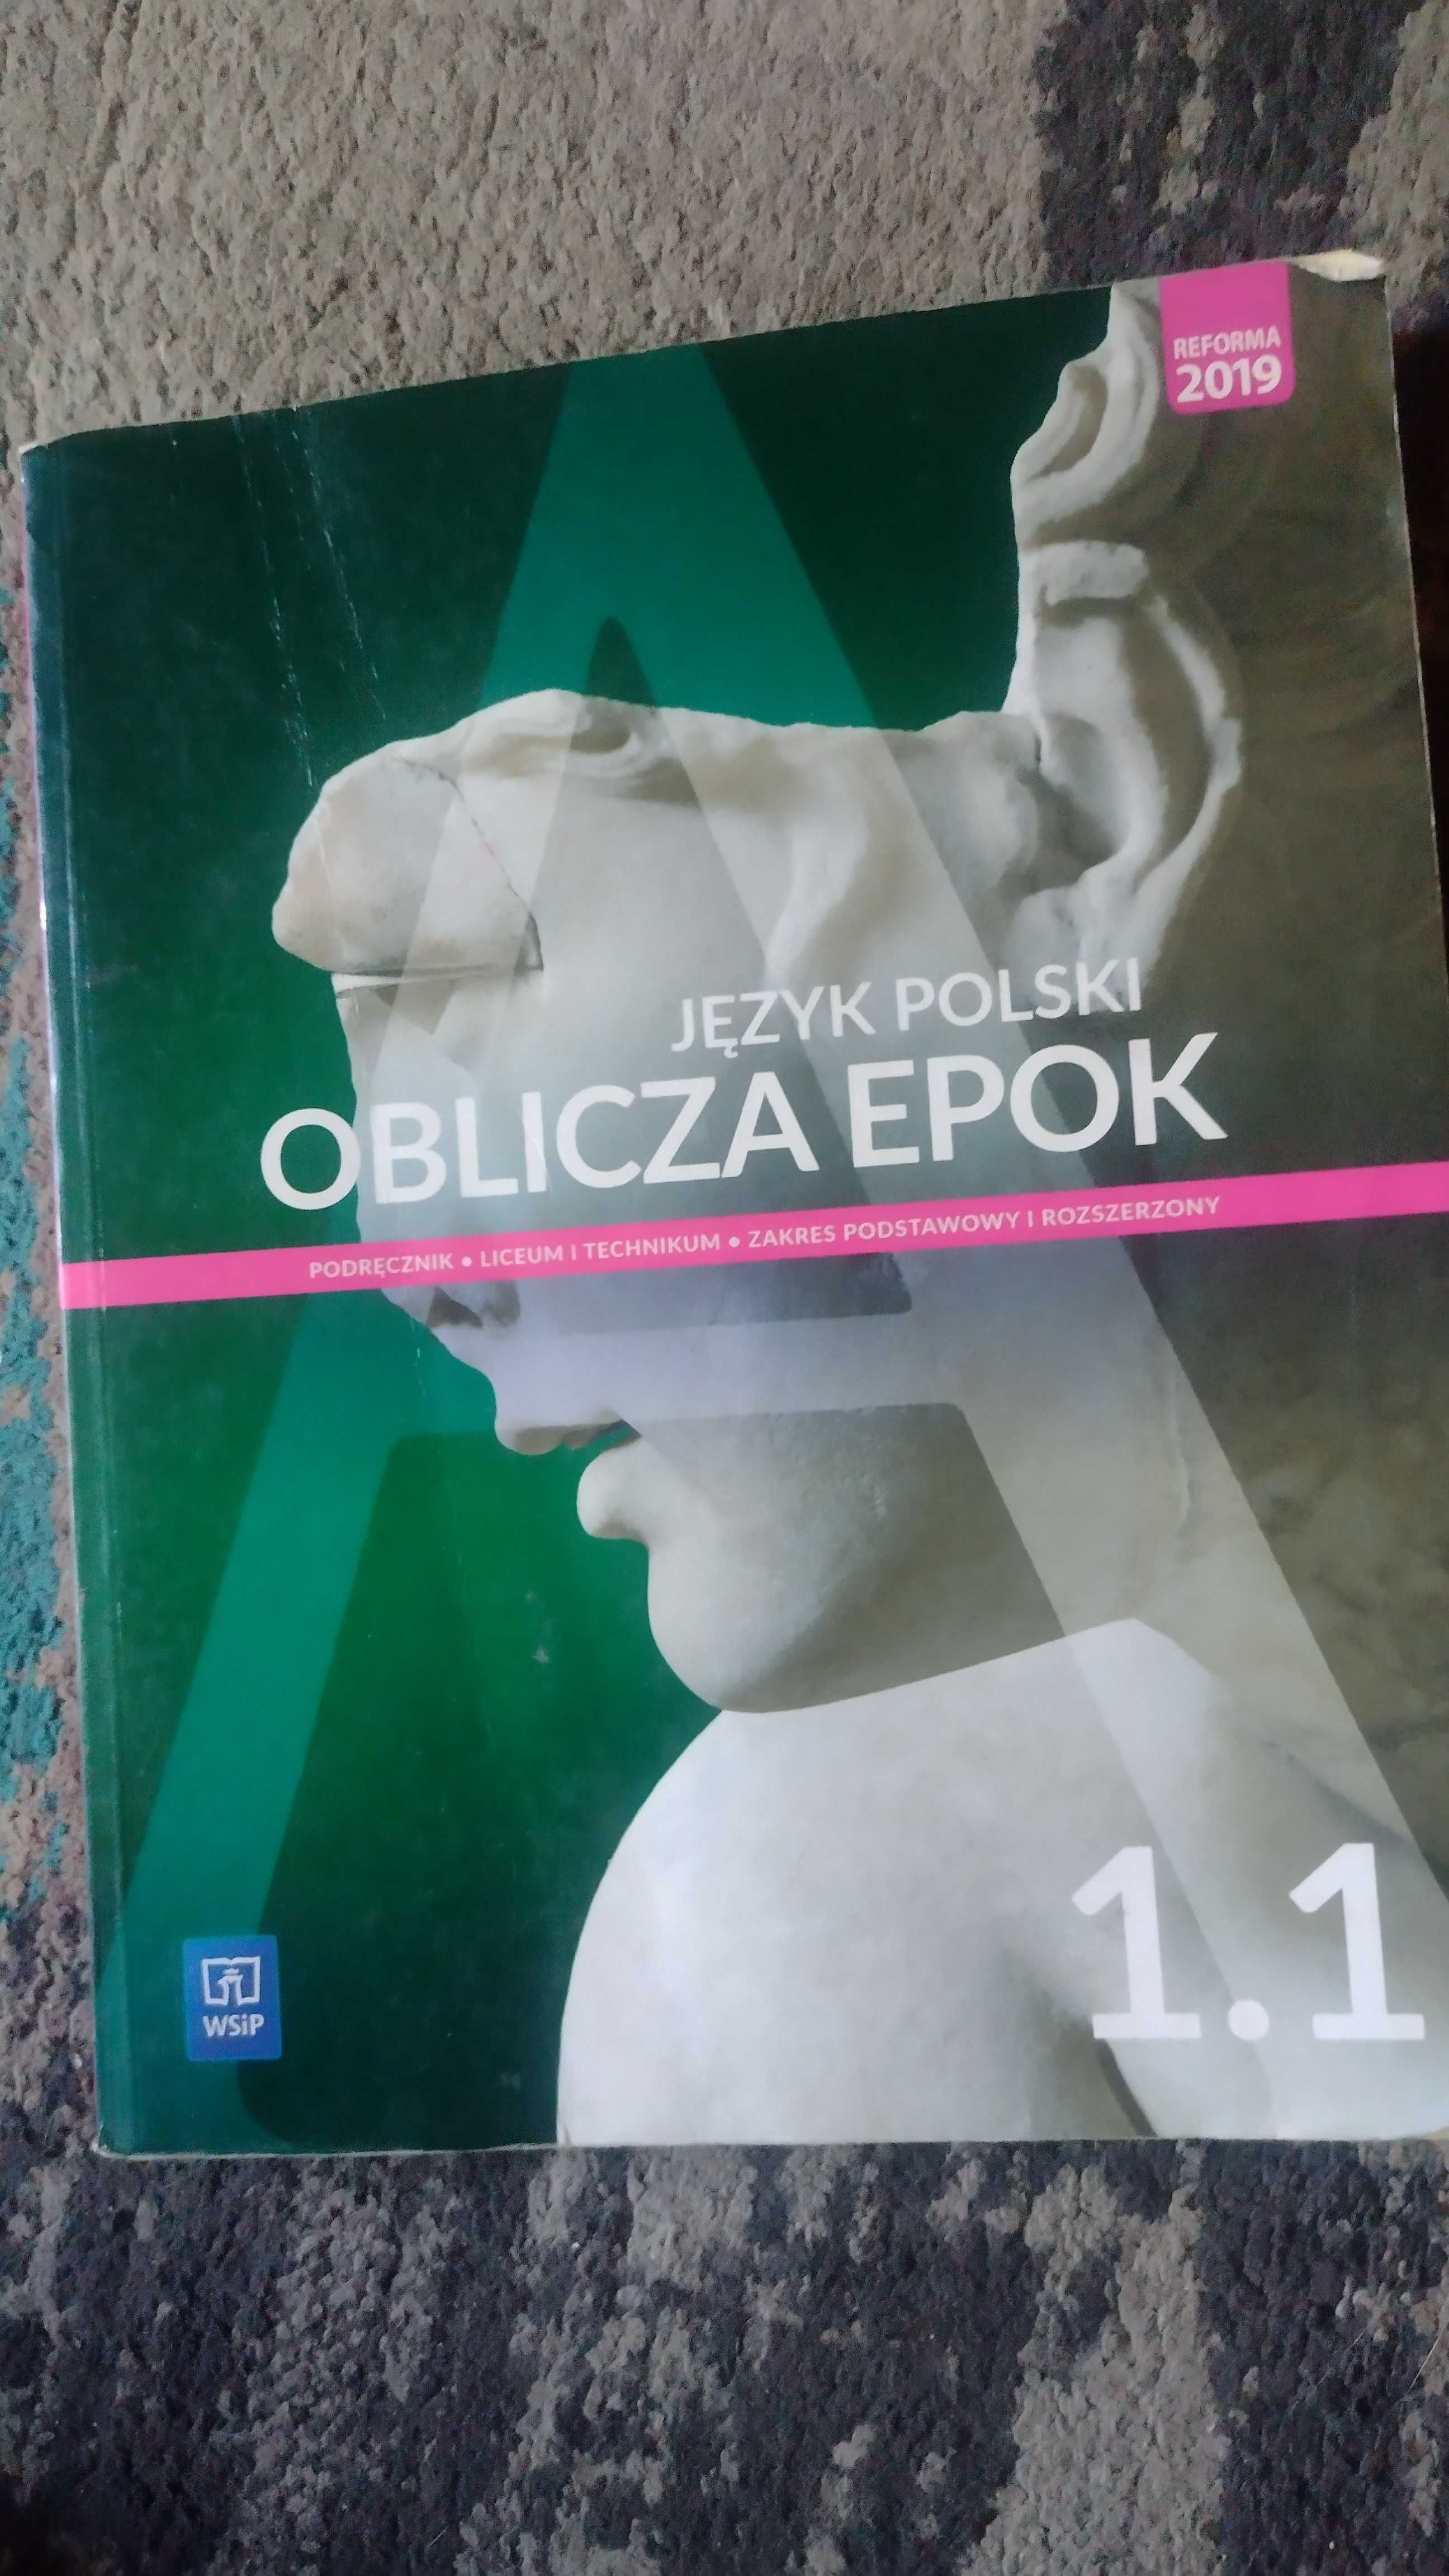 Podręcznik do języka polskiego Oblicza epok